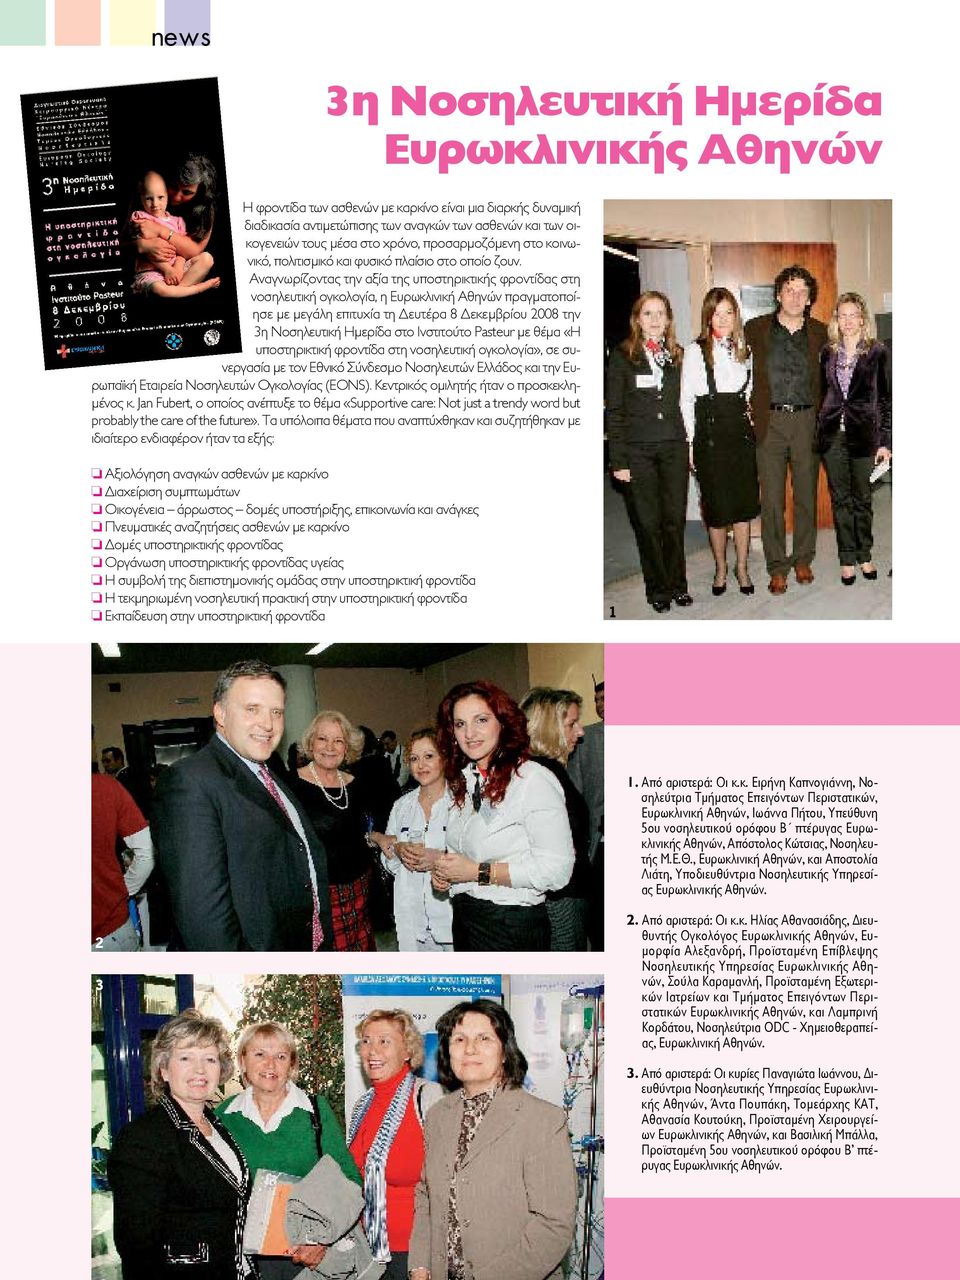 Αναγνωρίζοντας την αξία της υποστηρικτικής φροντίδας στη νοσηλευτική ογκολογία, η Ευρωκλινική Αθηνών πραγματοποίησε με μεγάλη επιτυχία τη Δευτέρα 8 Δεκεμβρίου 2008 την 3η Νοσηλευτική Ημερίδα στο